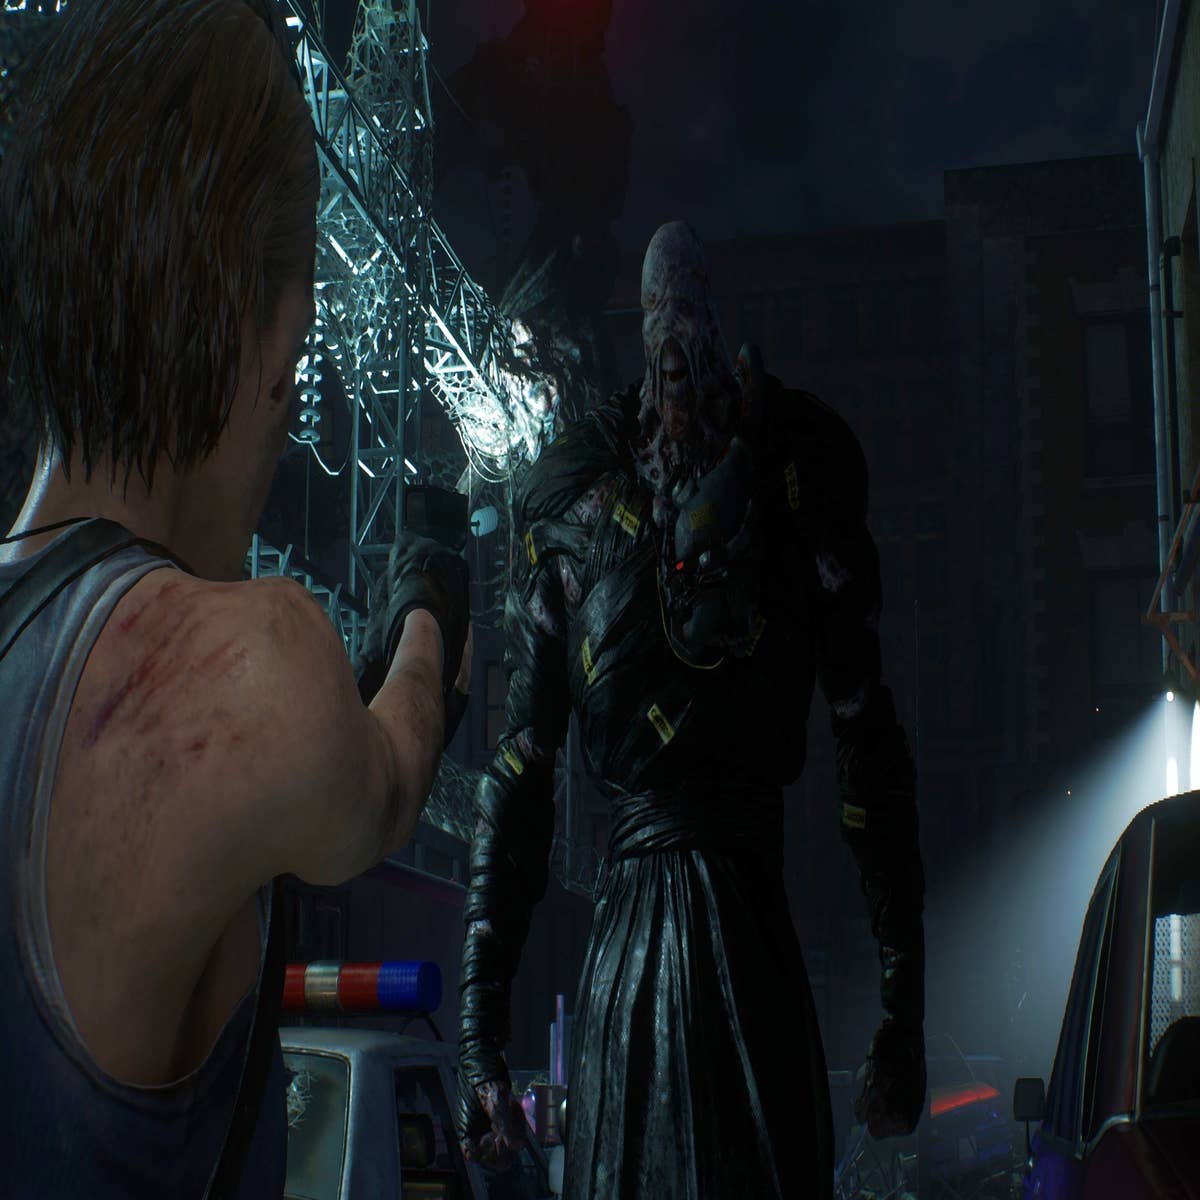  Resident Evil 3 - Xbox One : Capcom U S A Inc